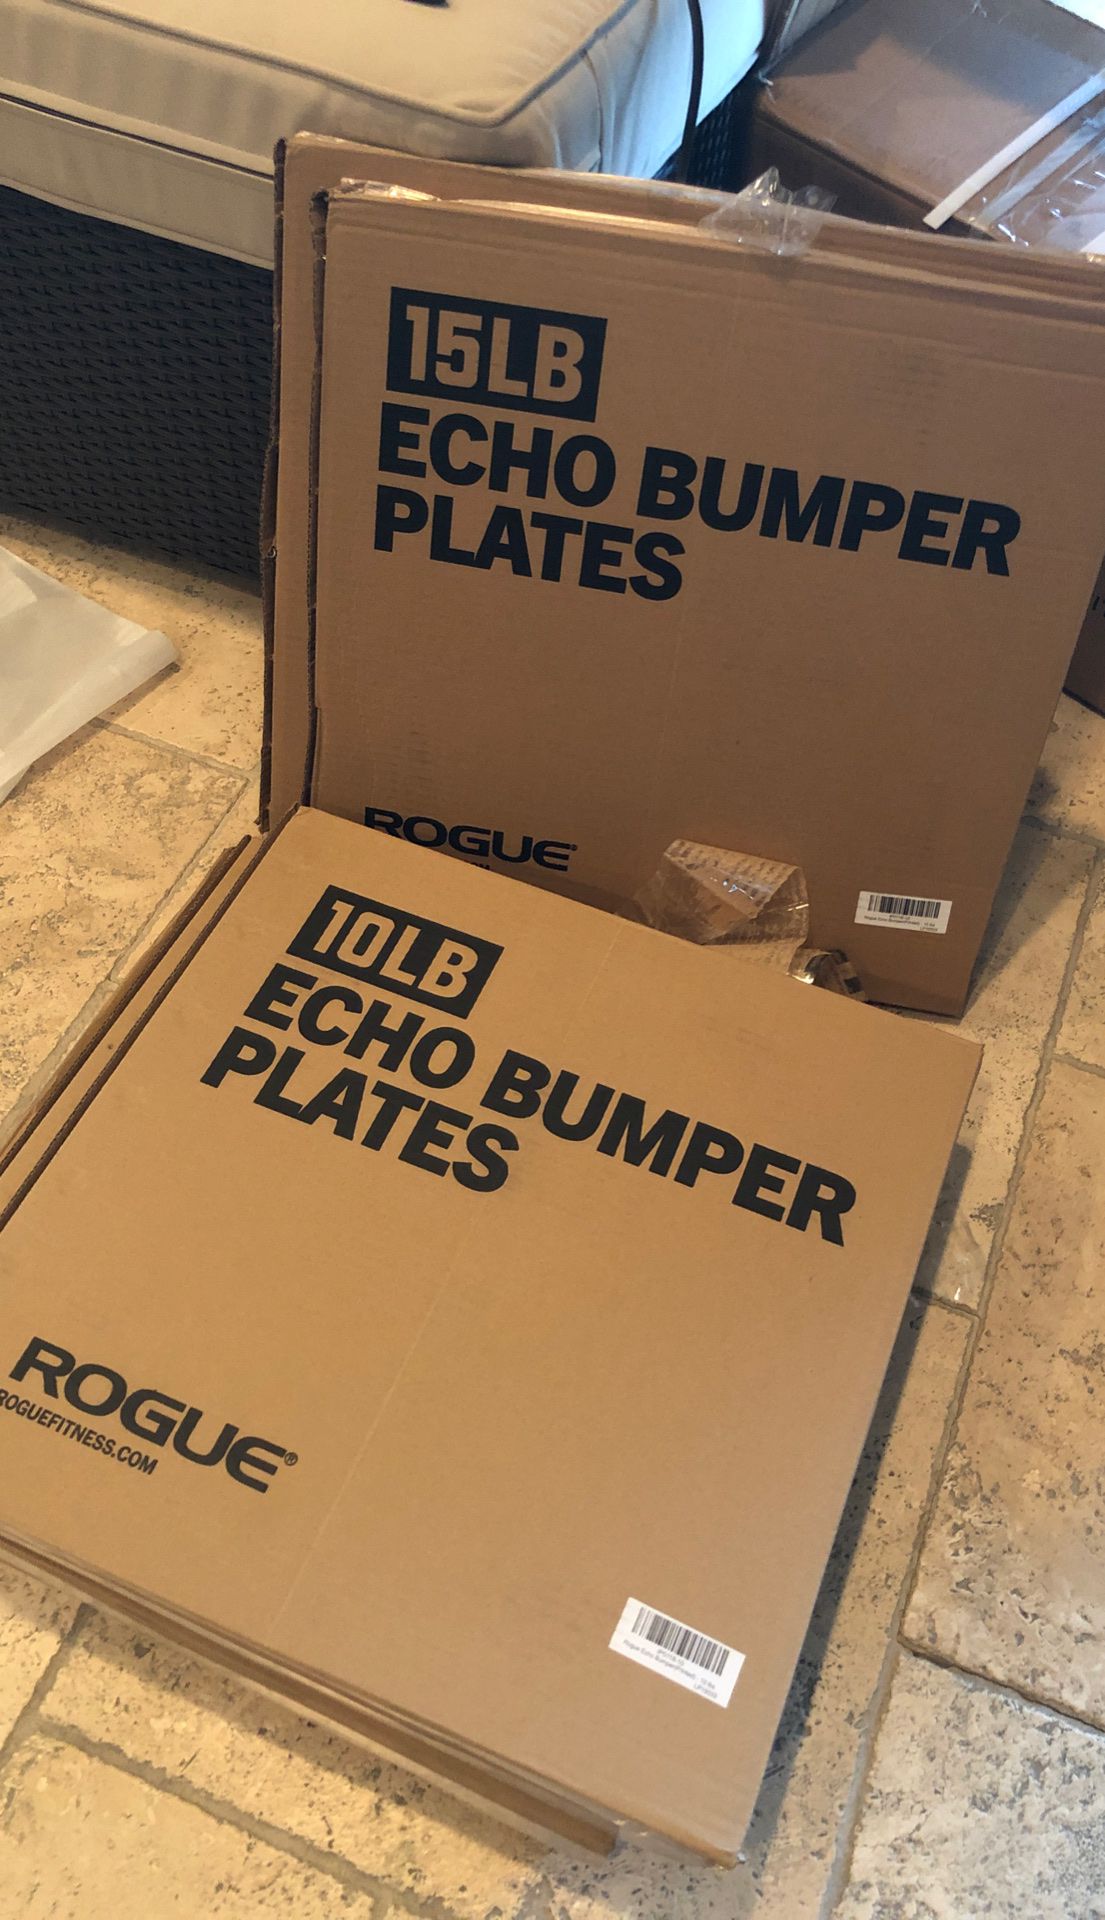 Rogue echo v2 bumper plates 10lbs $150 a pair 15 lbs $165 a pair